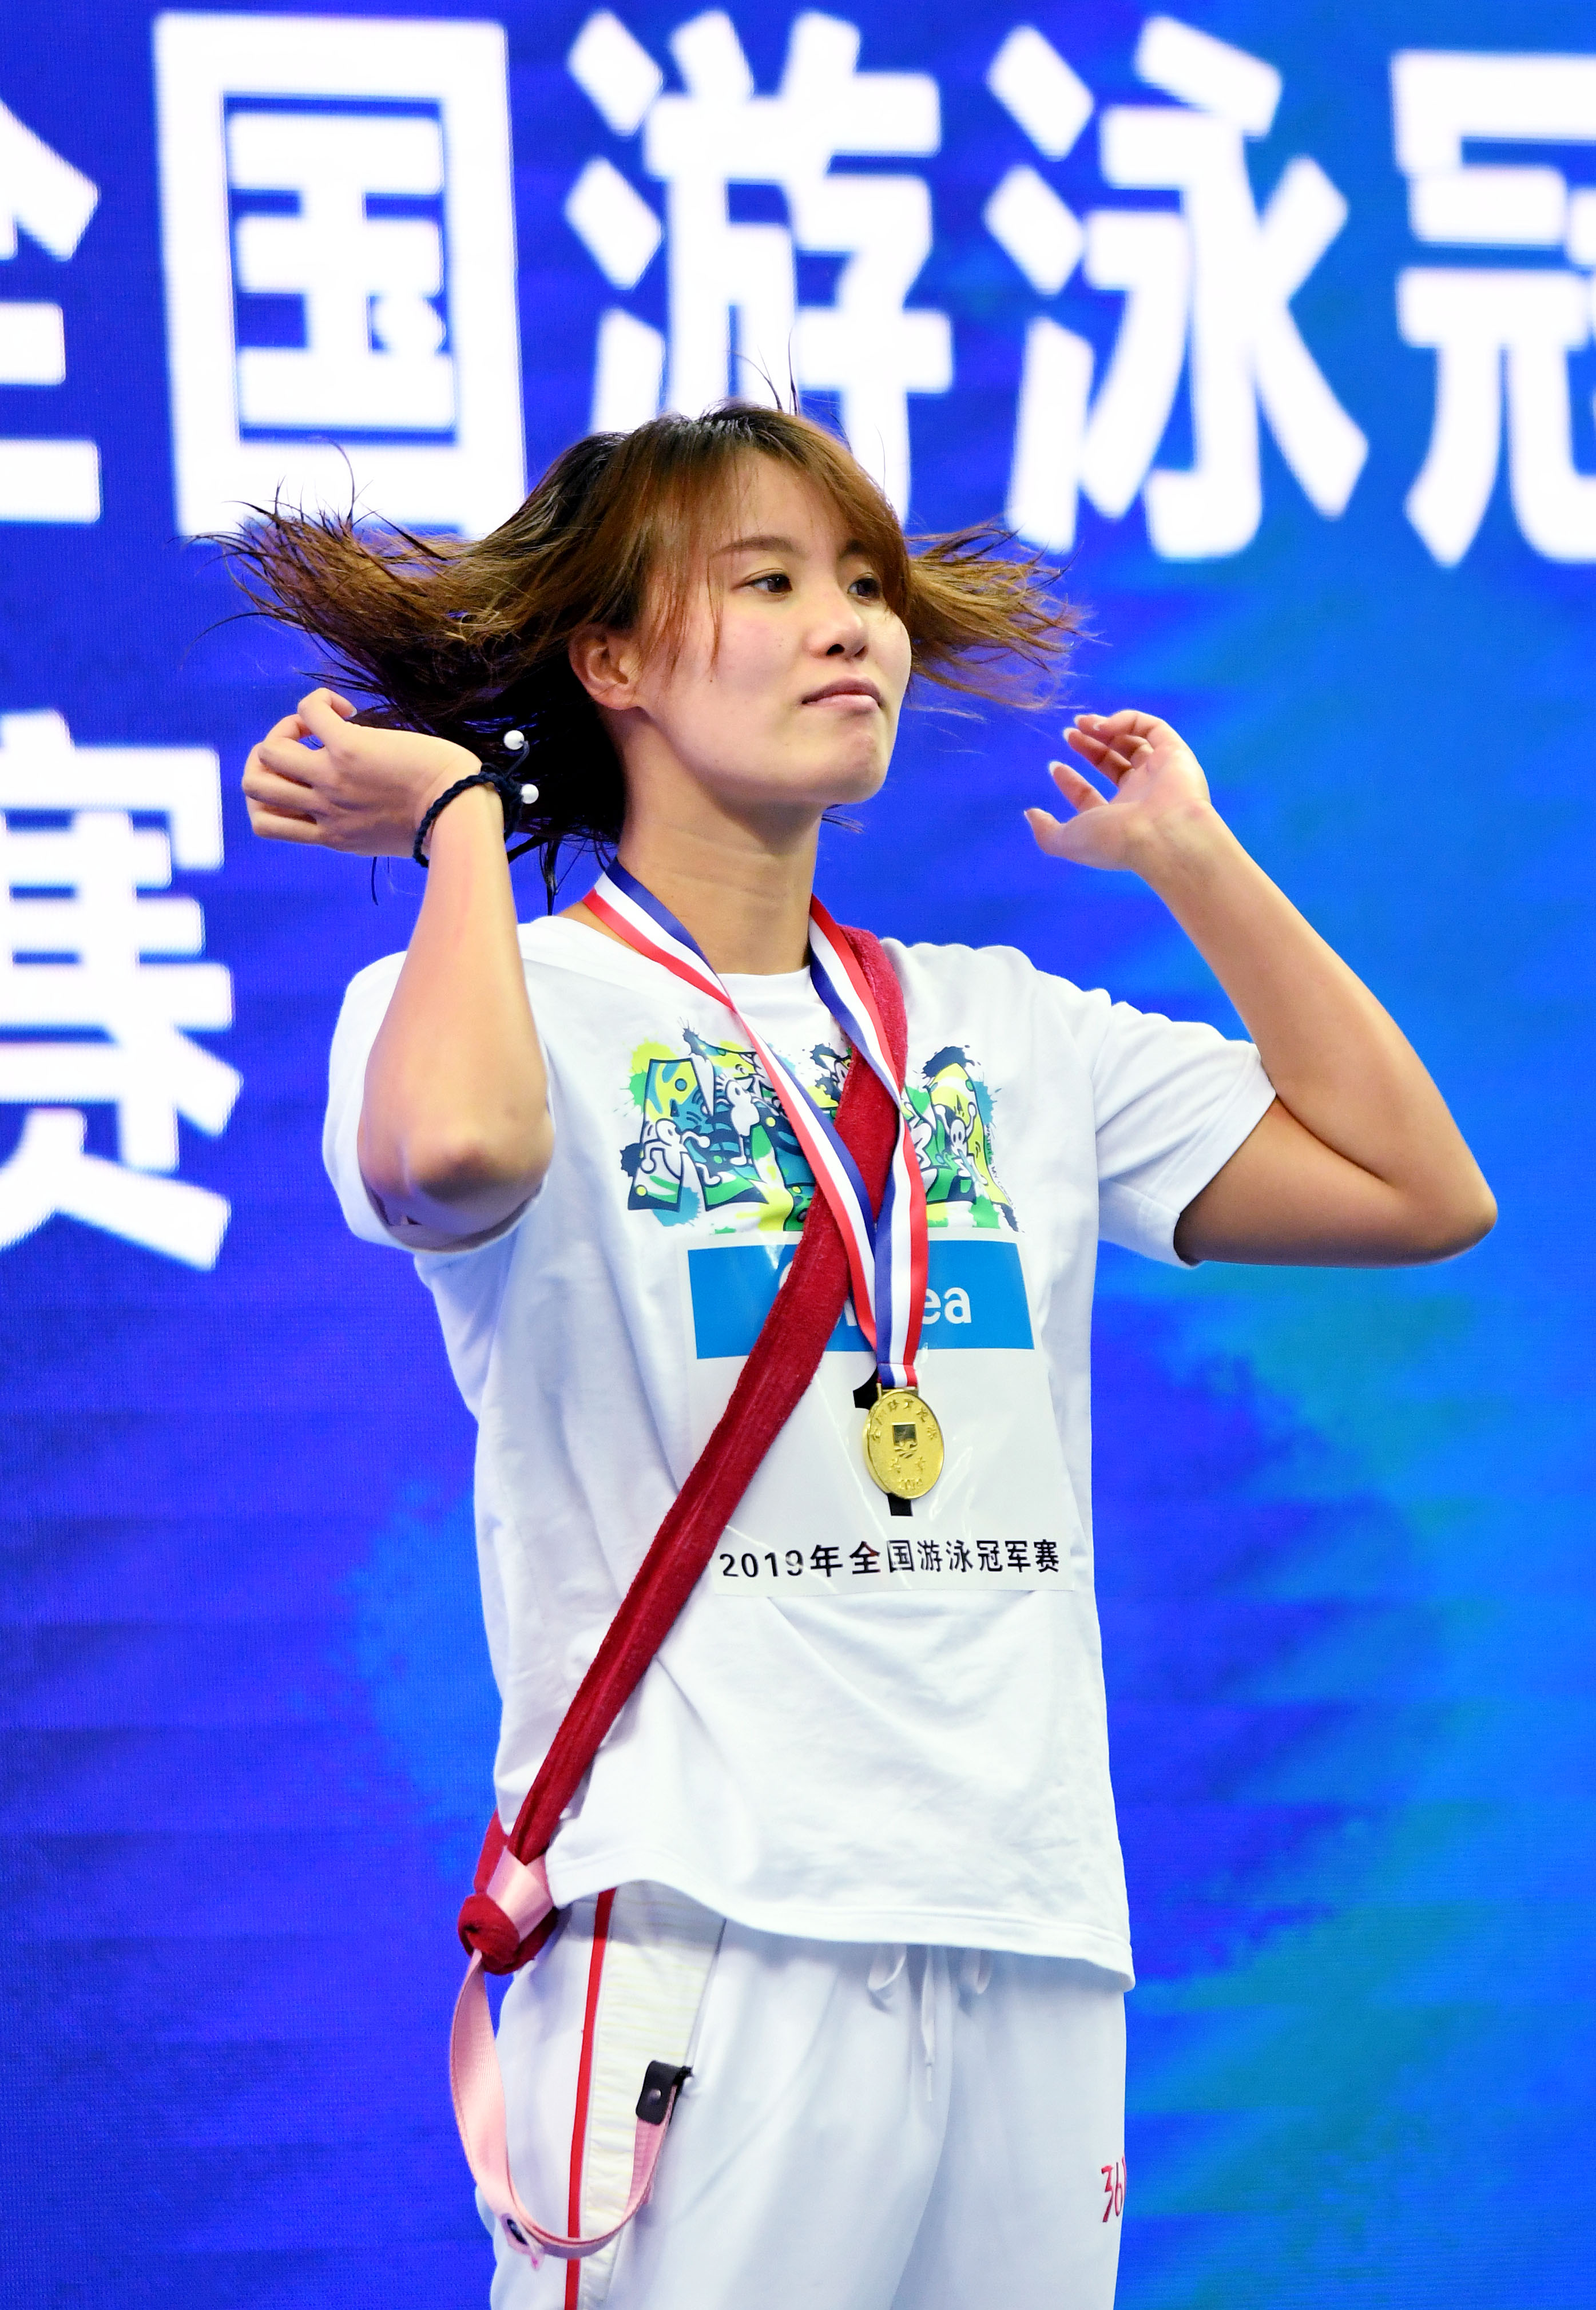 游泳——全国冠军赛:傅园慧获女子50米仰泳冠军